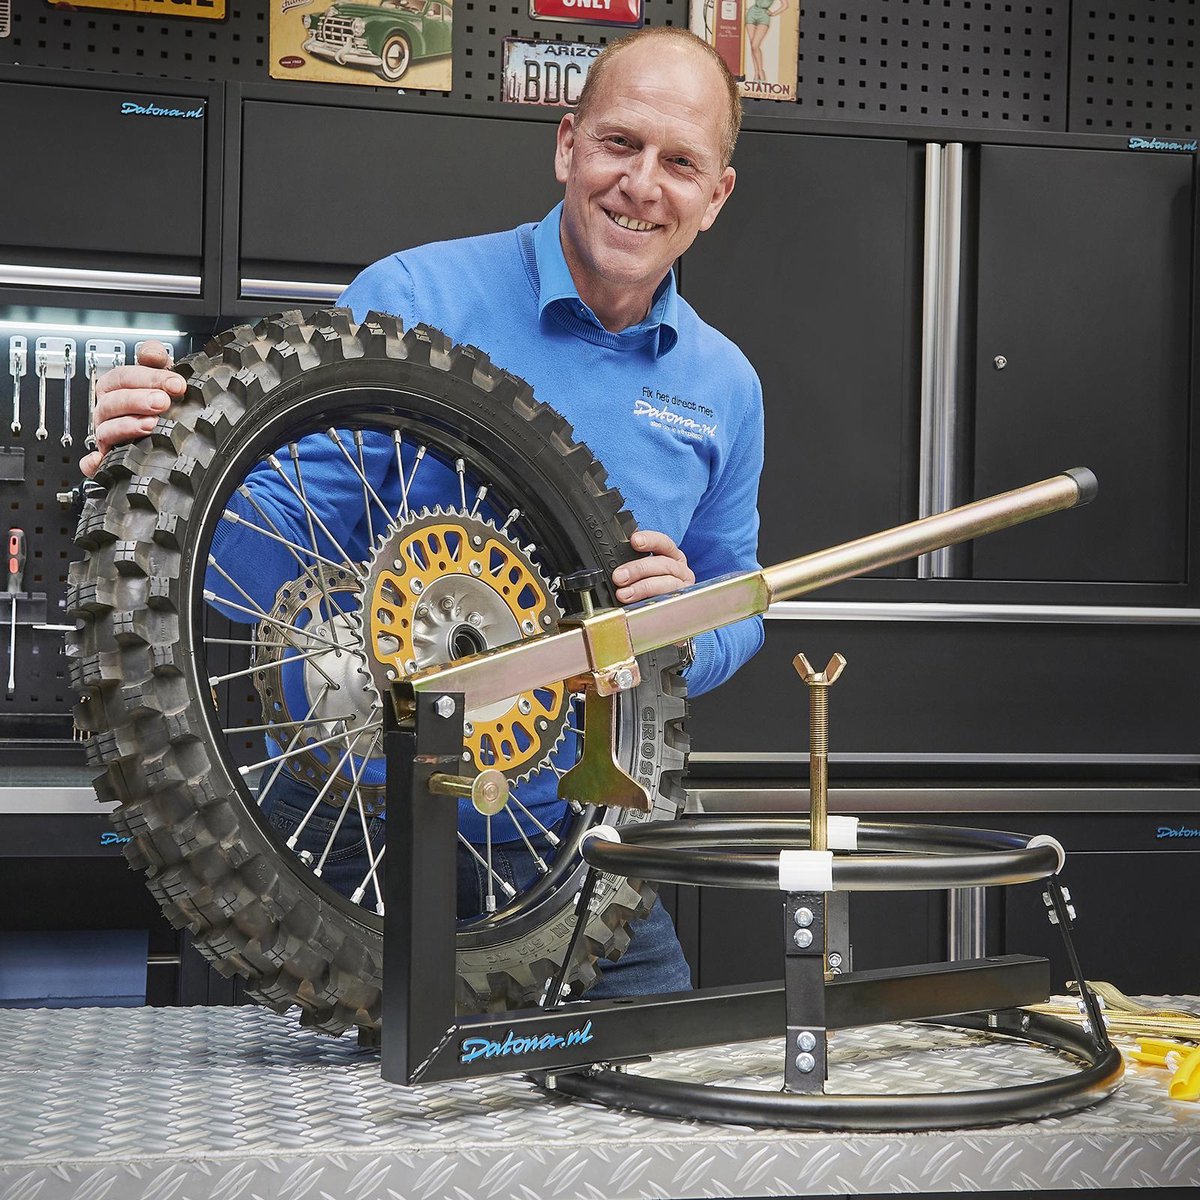 HBM Dispositif d'équilibrage des pneus de moto avec pieds réglables